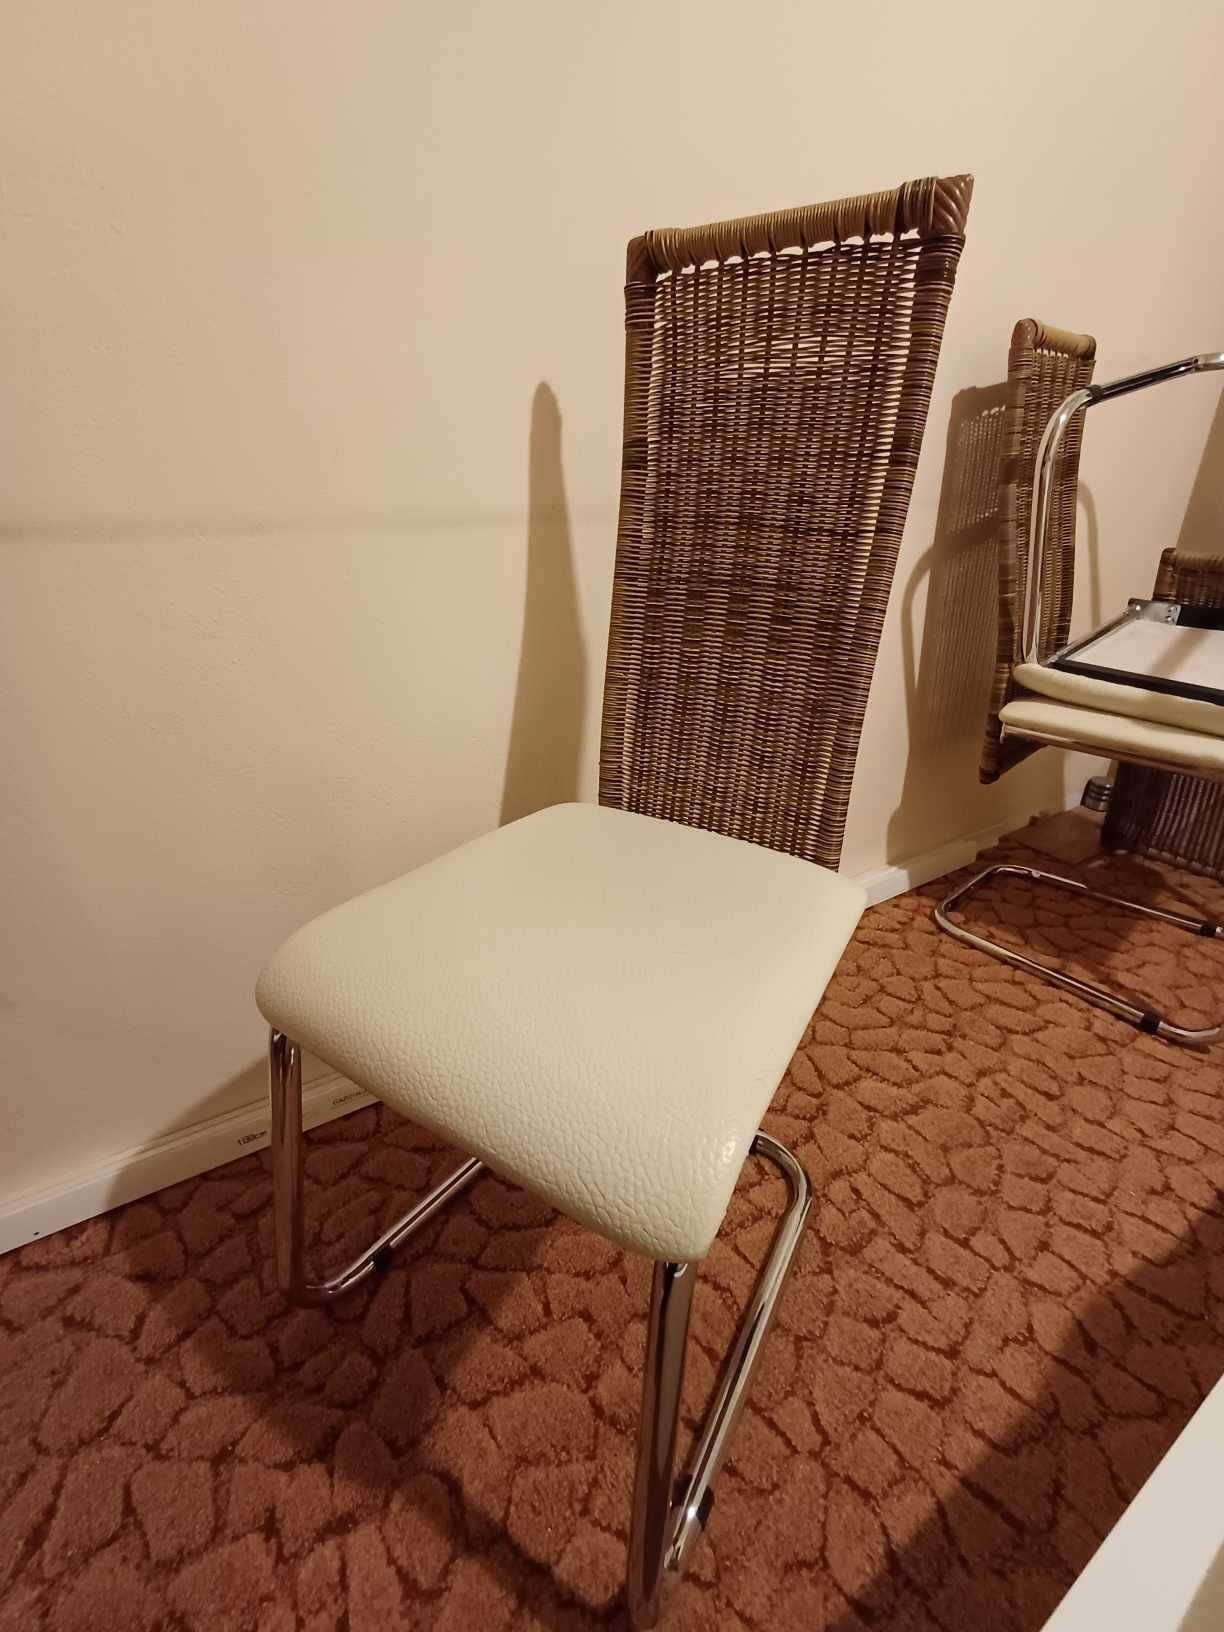 Krzesła kuchenne/do pokoju 4 sztuki